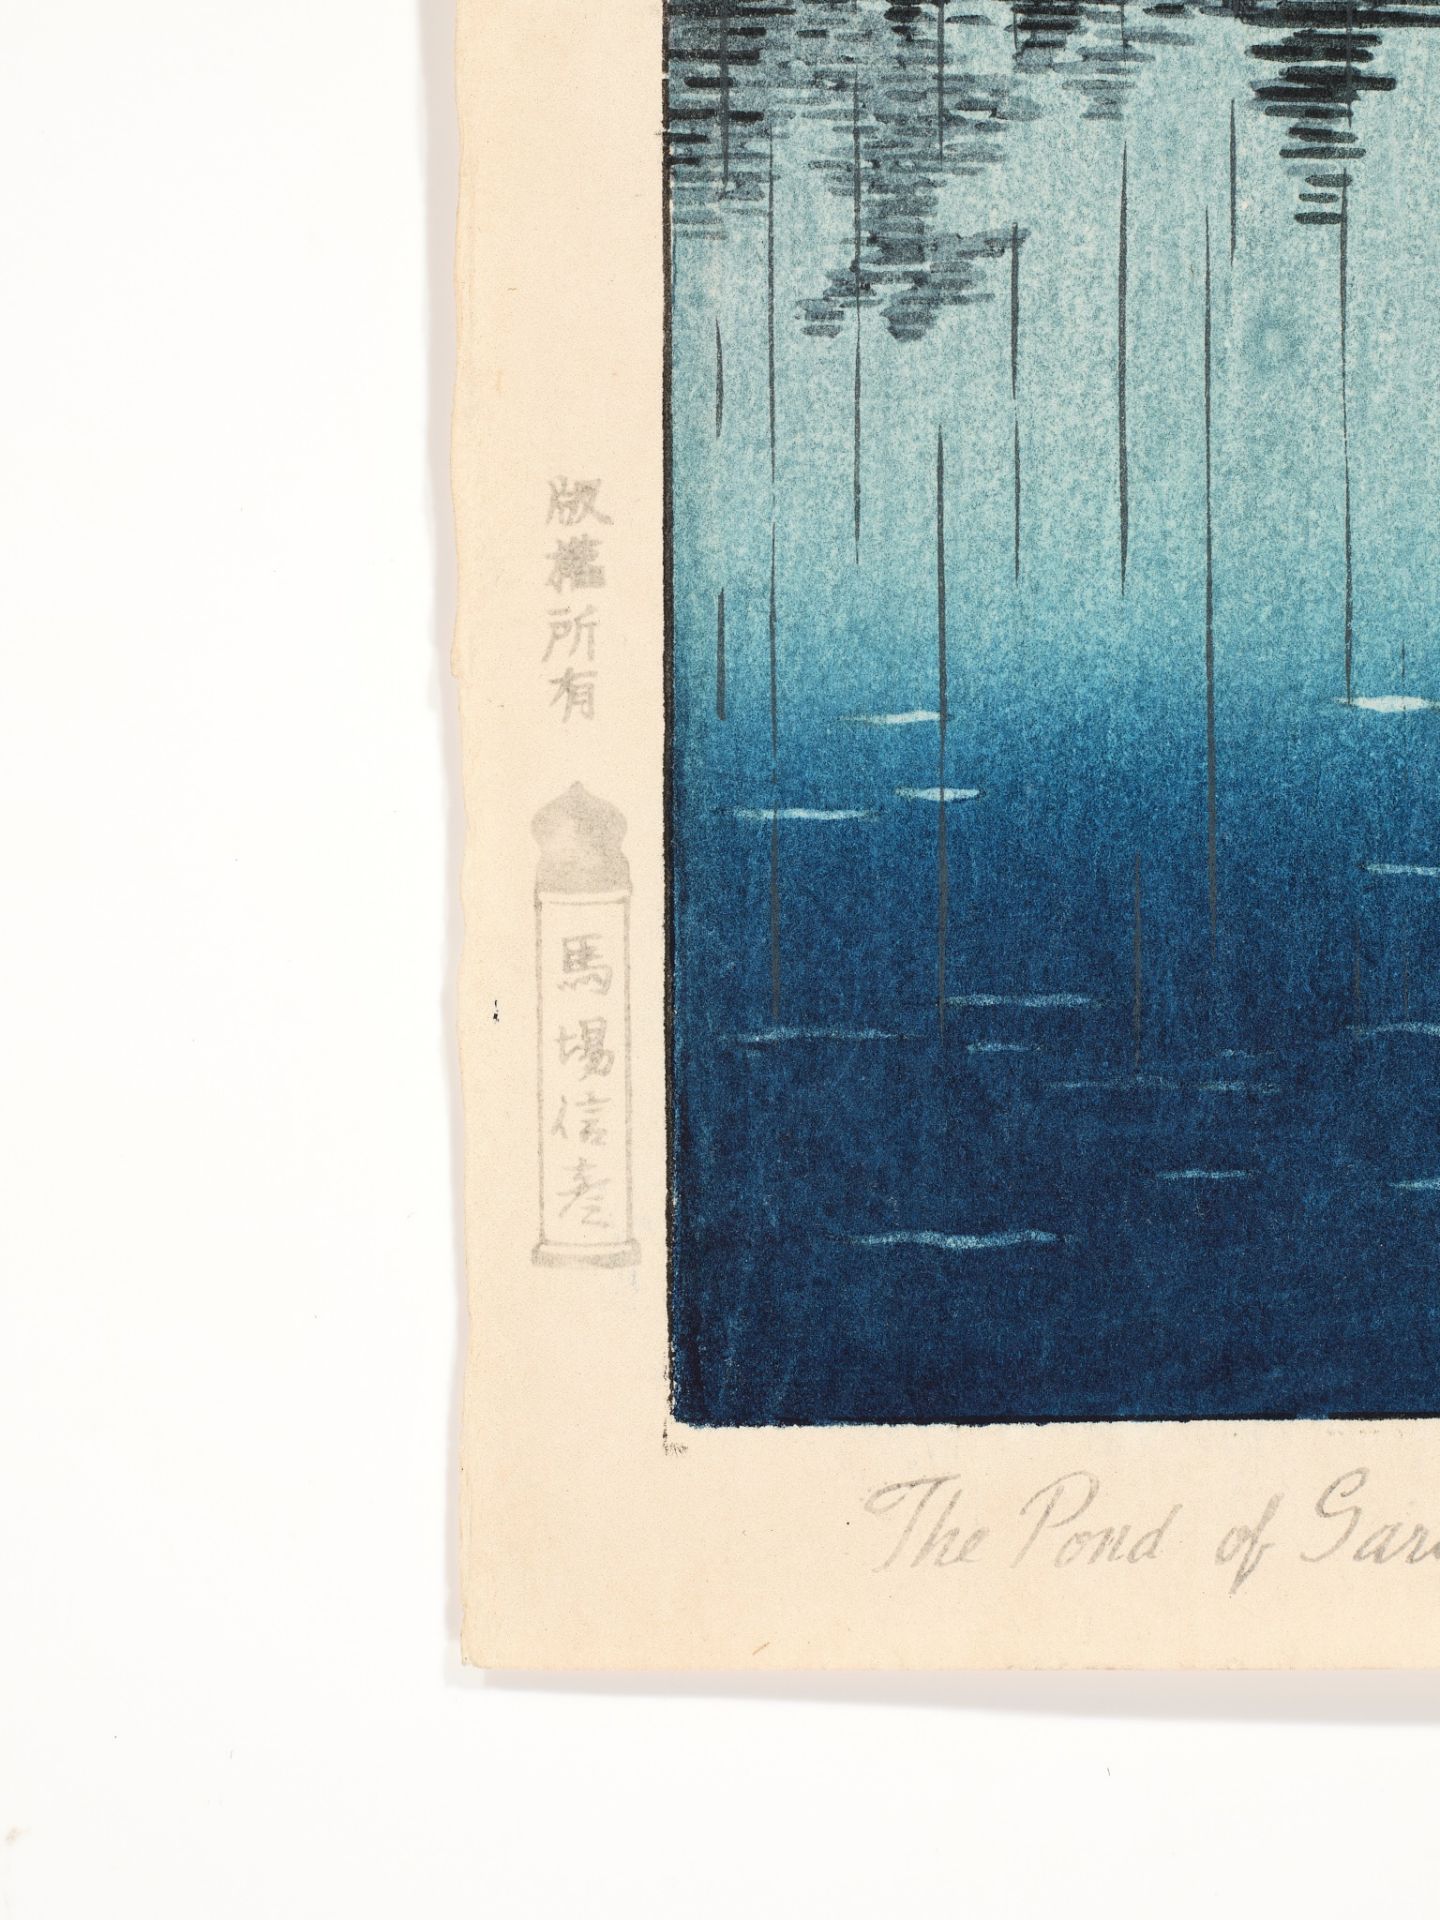 TSUCHIYA KOITSU (1870-1949), THE POND OF SARUSAWA, NARA ON A RAINY EVENING - Image 5 of 7